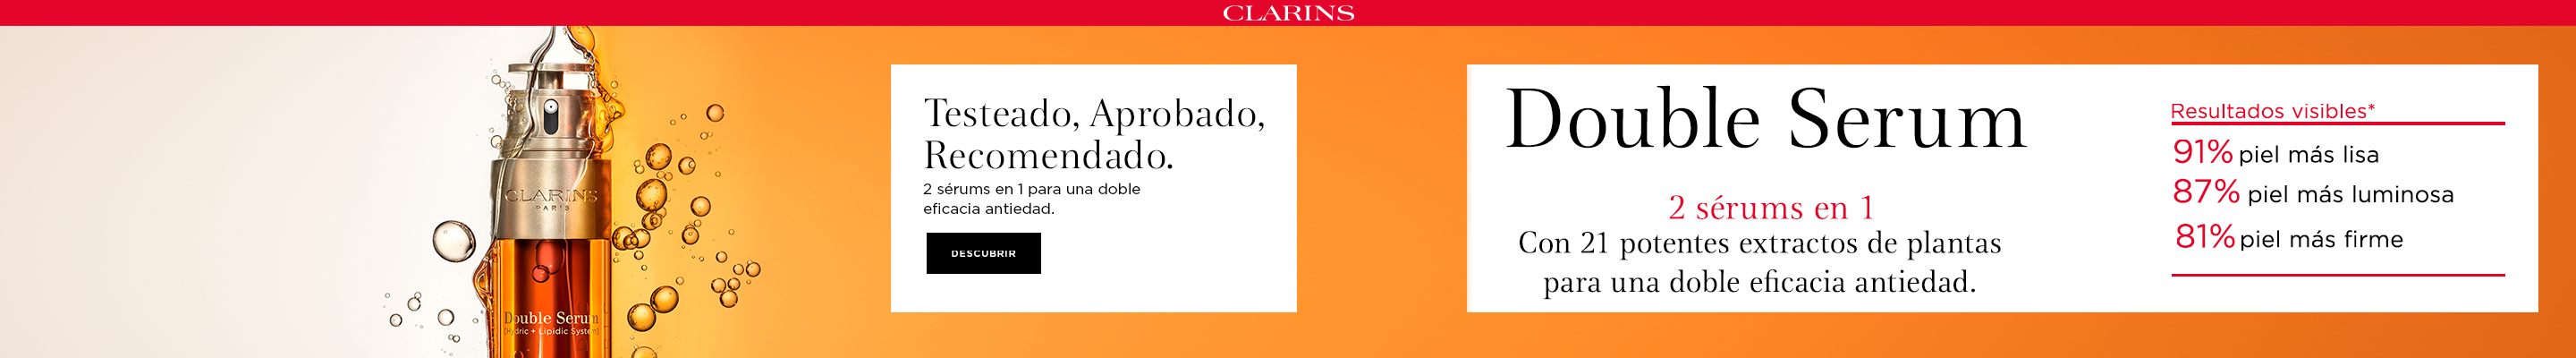 clarins.jpg